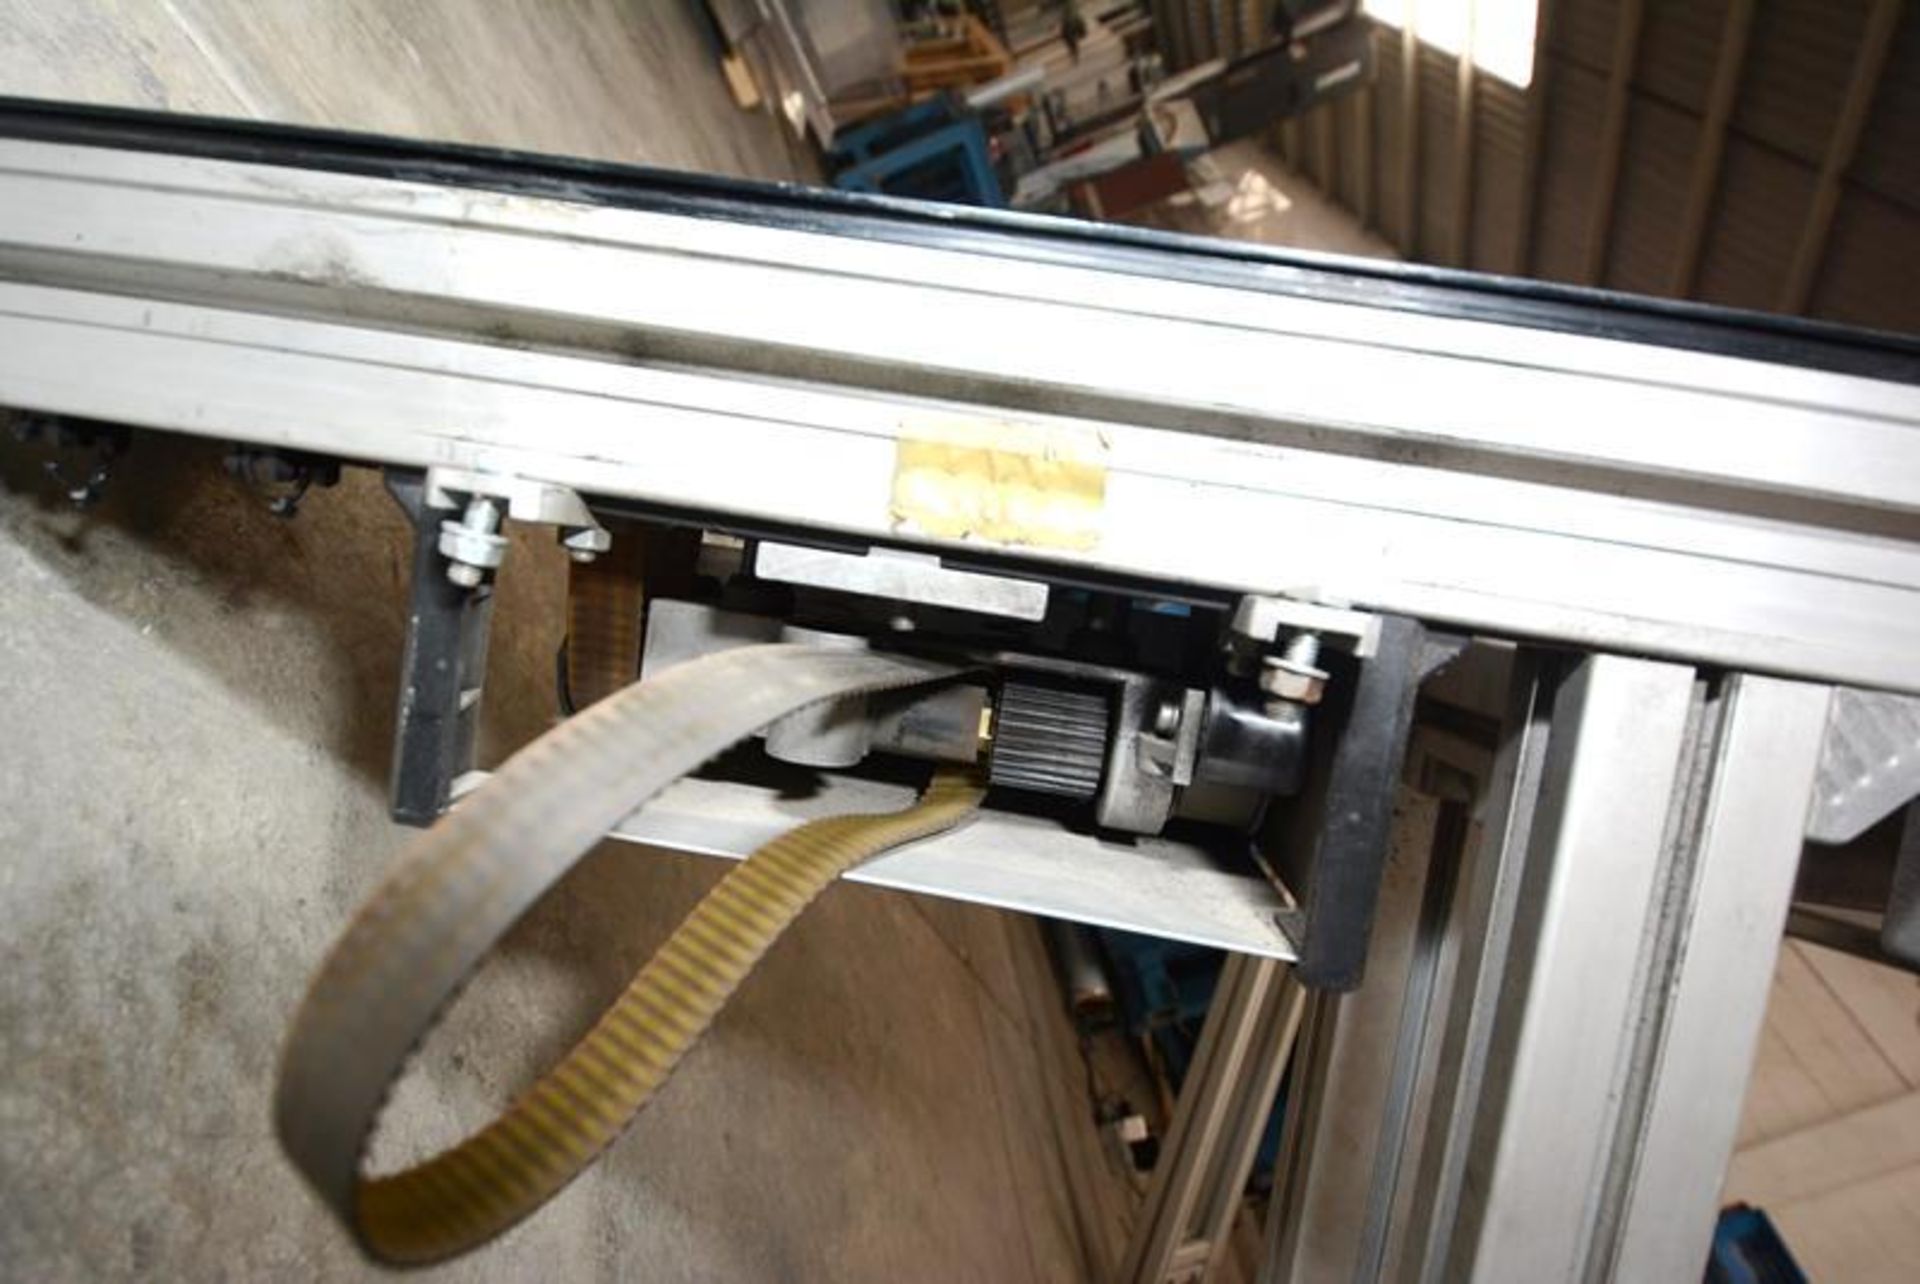 Equipment: Conveyor, conveyor simple. Brand: Bosch. Model: N/A. Year: N/A. Serial Number: N/A. - Image 11 of 13